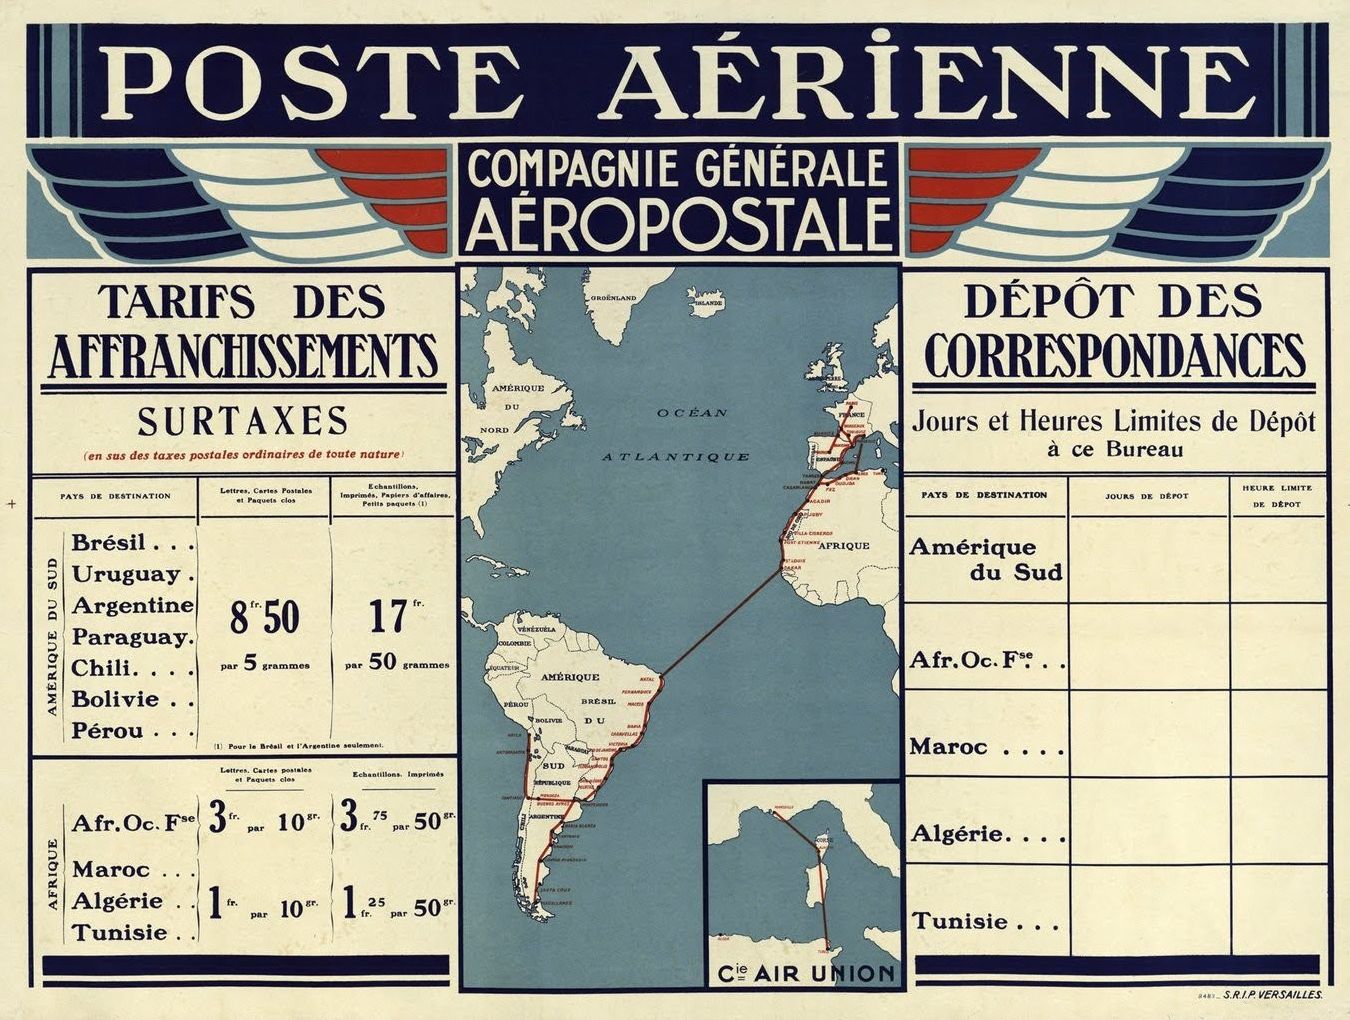 Compagnie Générale Aéropostale. Poste aérienne